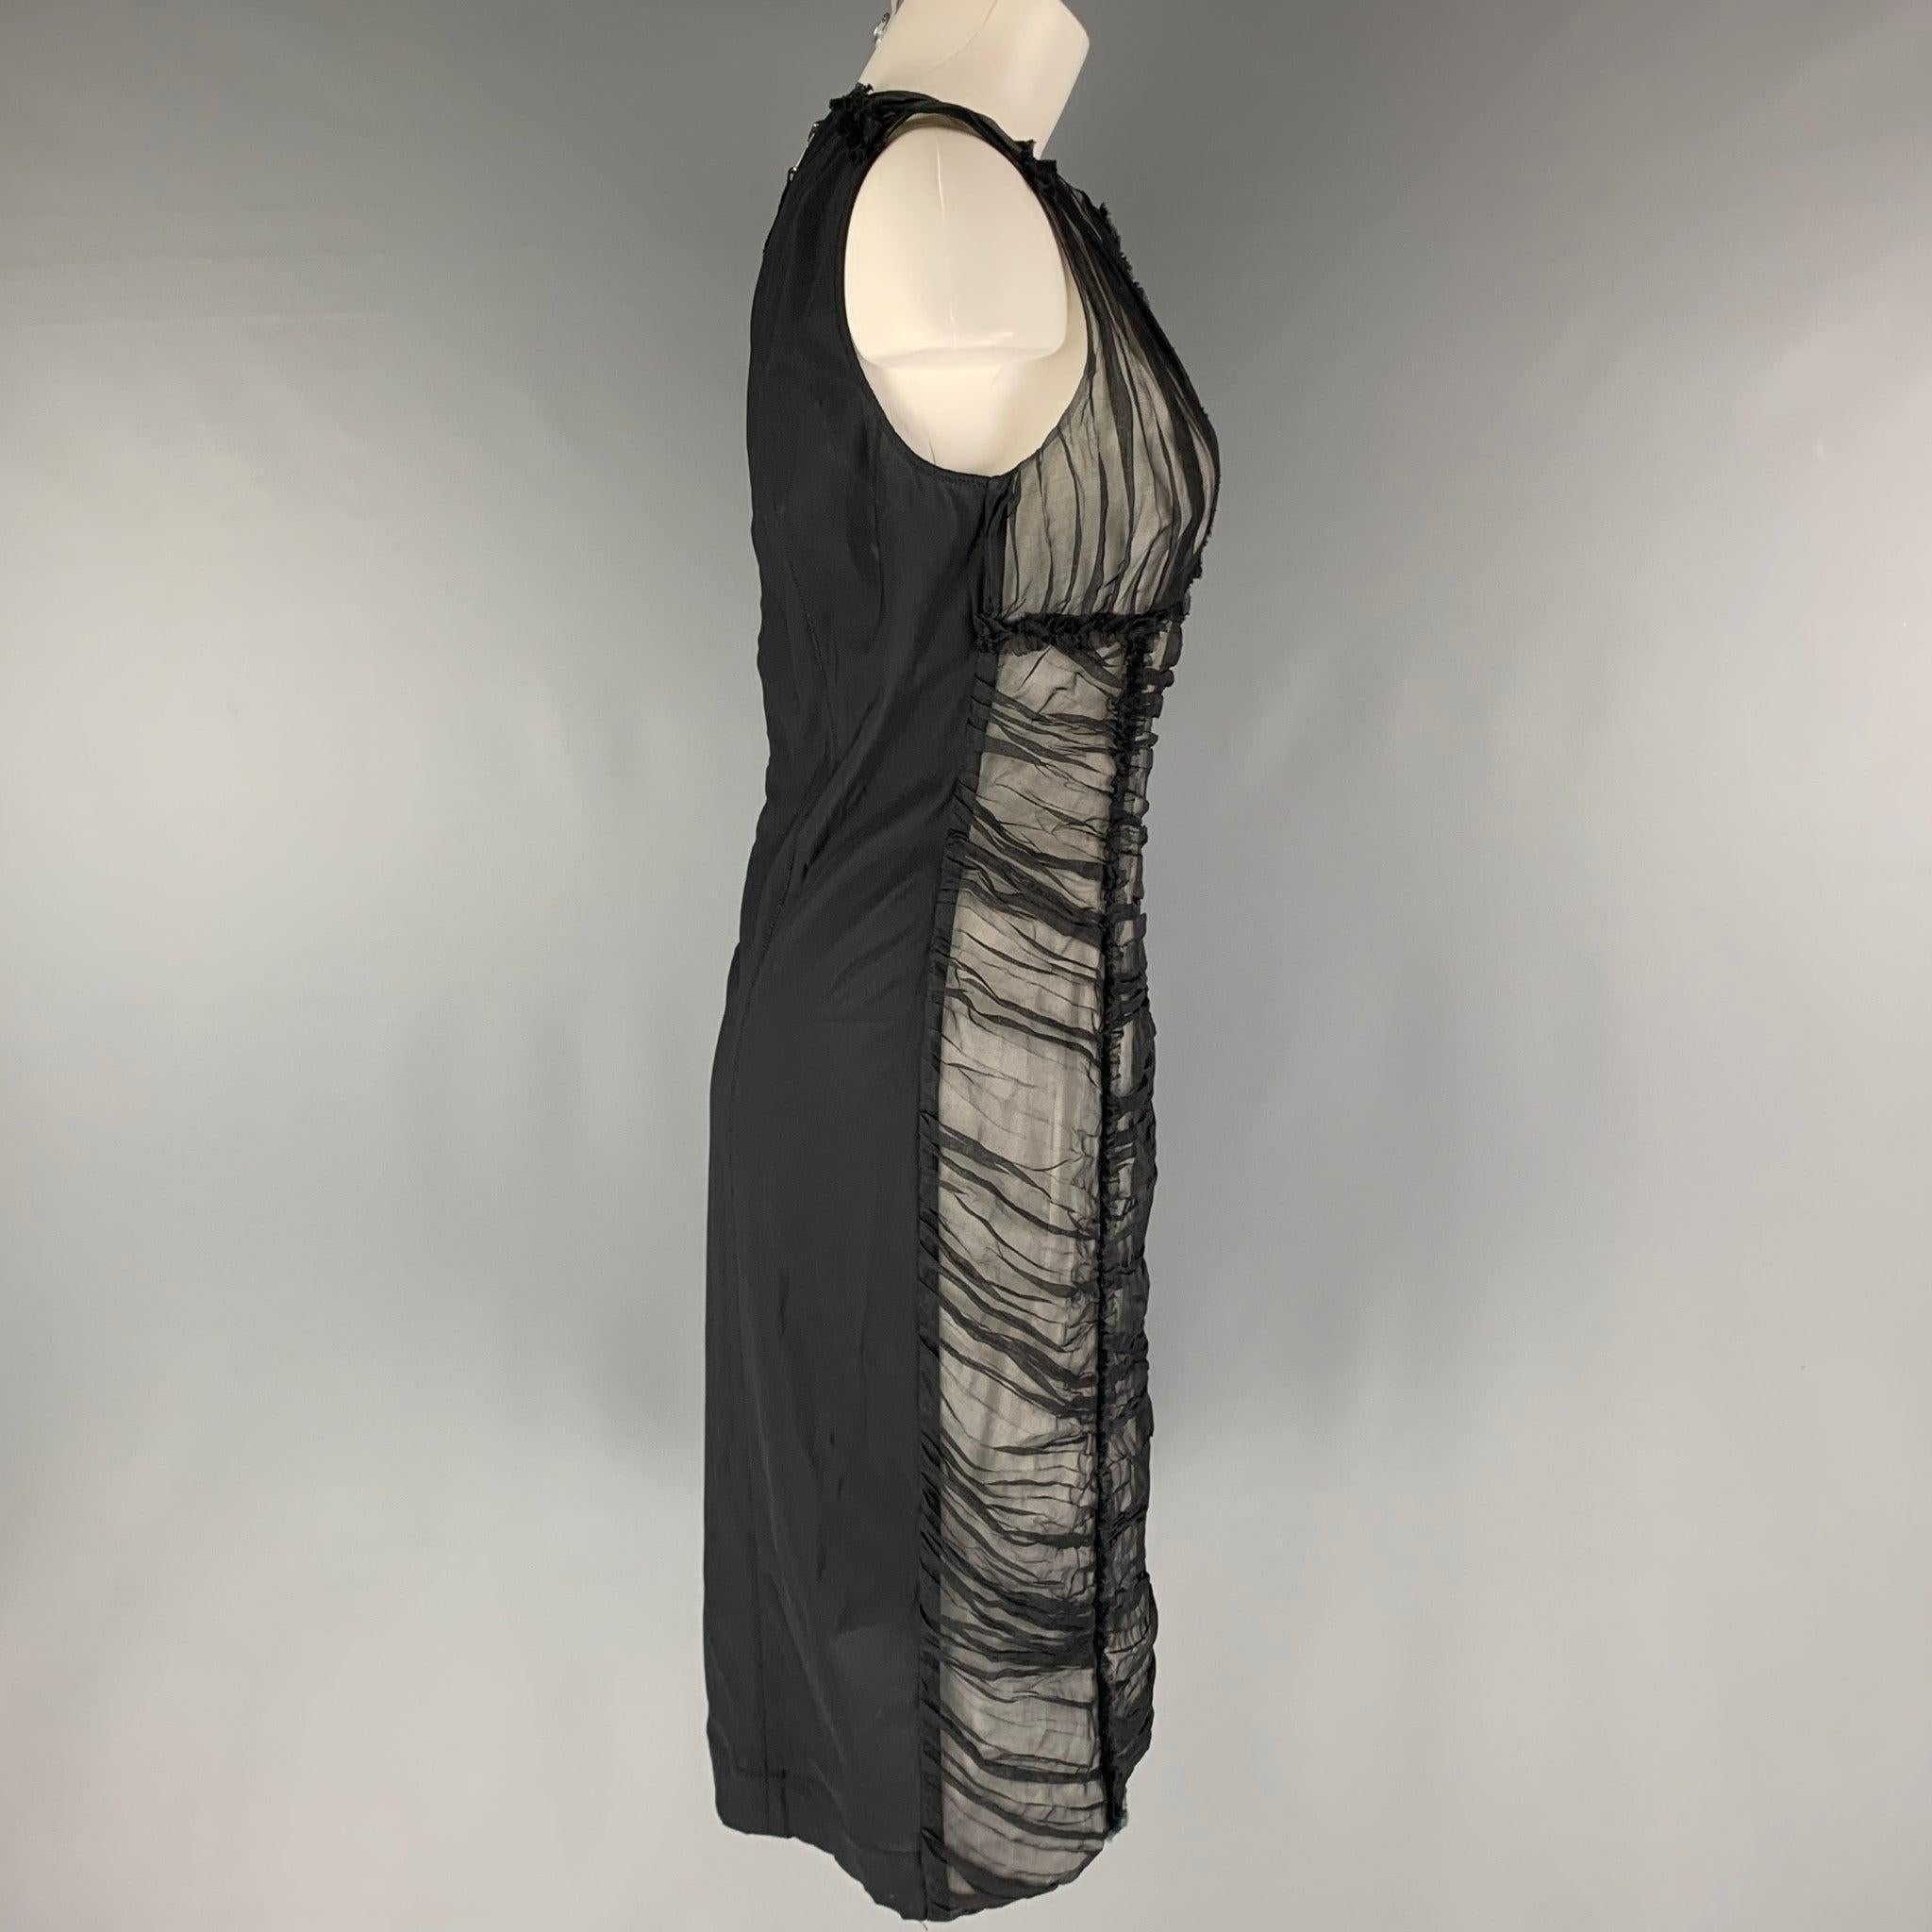 La robe D&G by DOLCE & GABBANA se compose d'une matière tissée transparente en nylon noir, d'une doublure tissée blanche sur le devant, de détails froncés et d'une fermeture à glissière. Fabriqué en Italie. Très bon état. Marques et signes d'usure